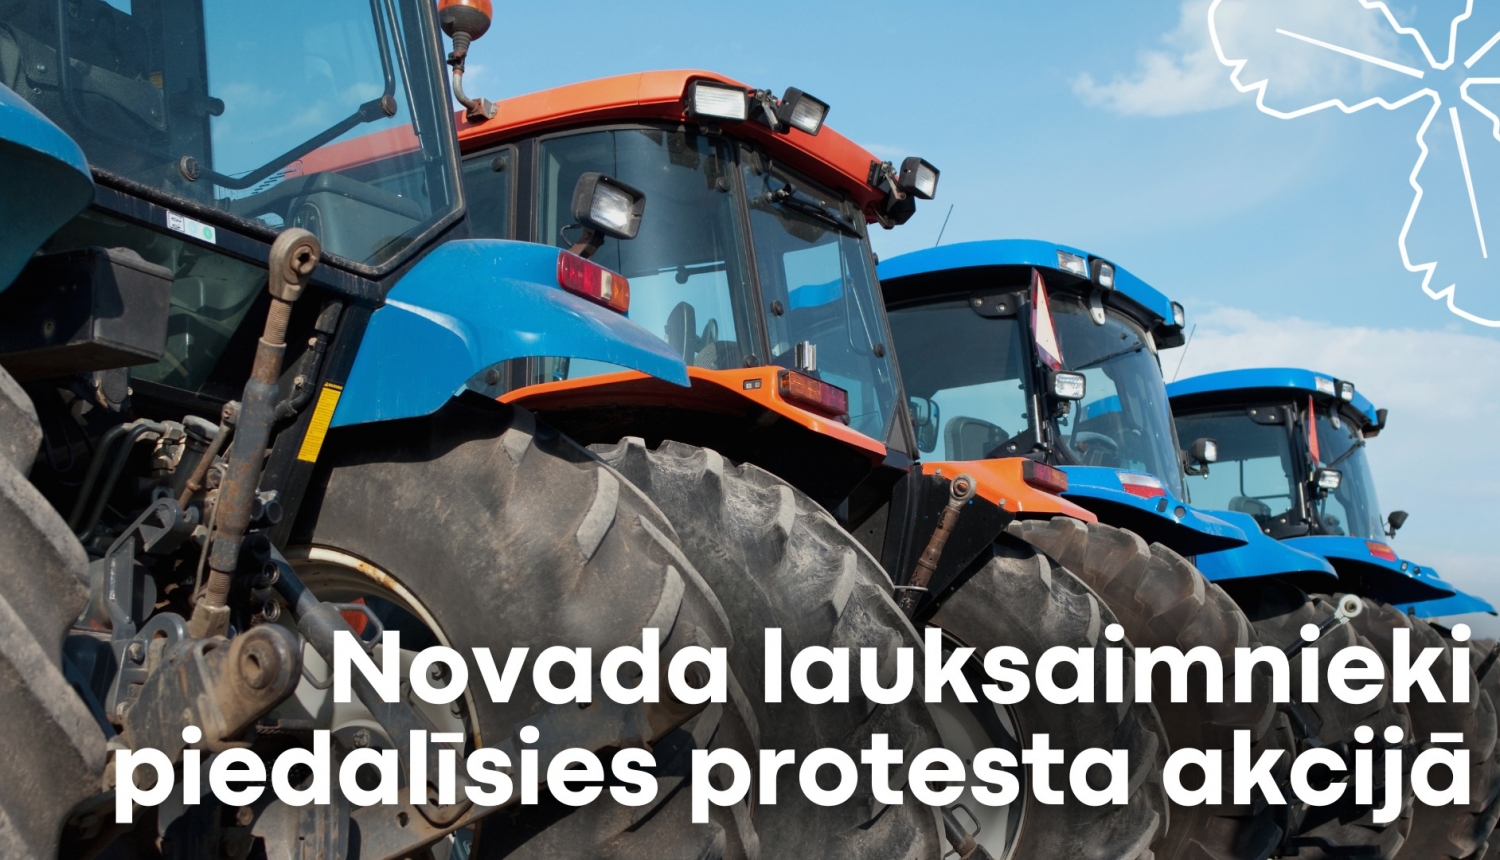 lauksaimnieki piedalīsies protesta akcijā